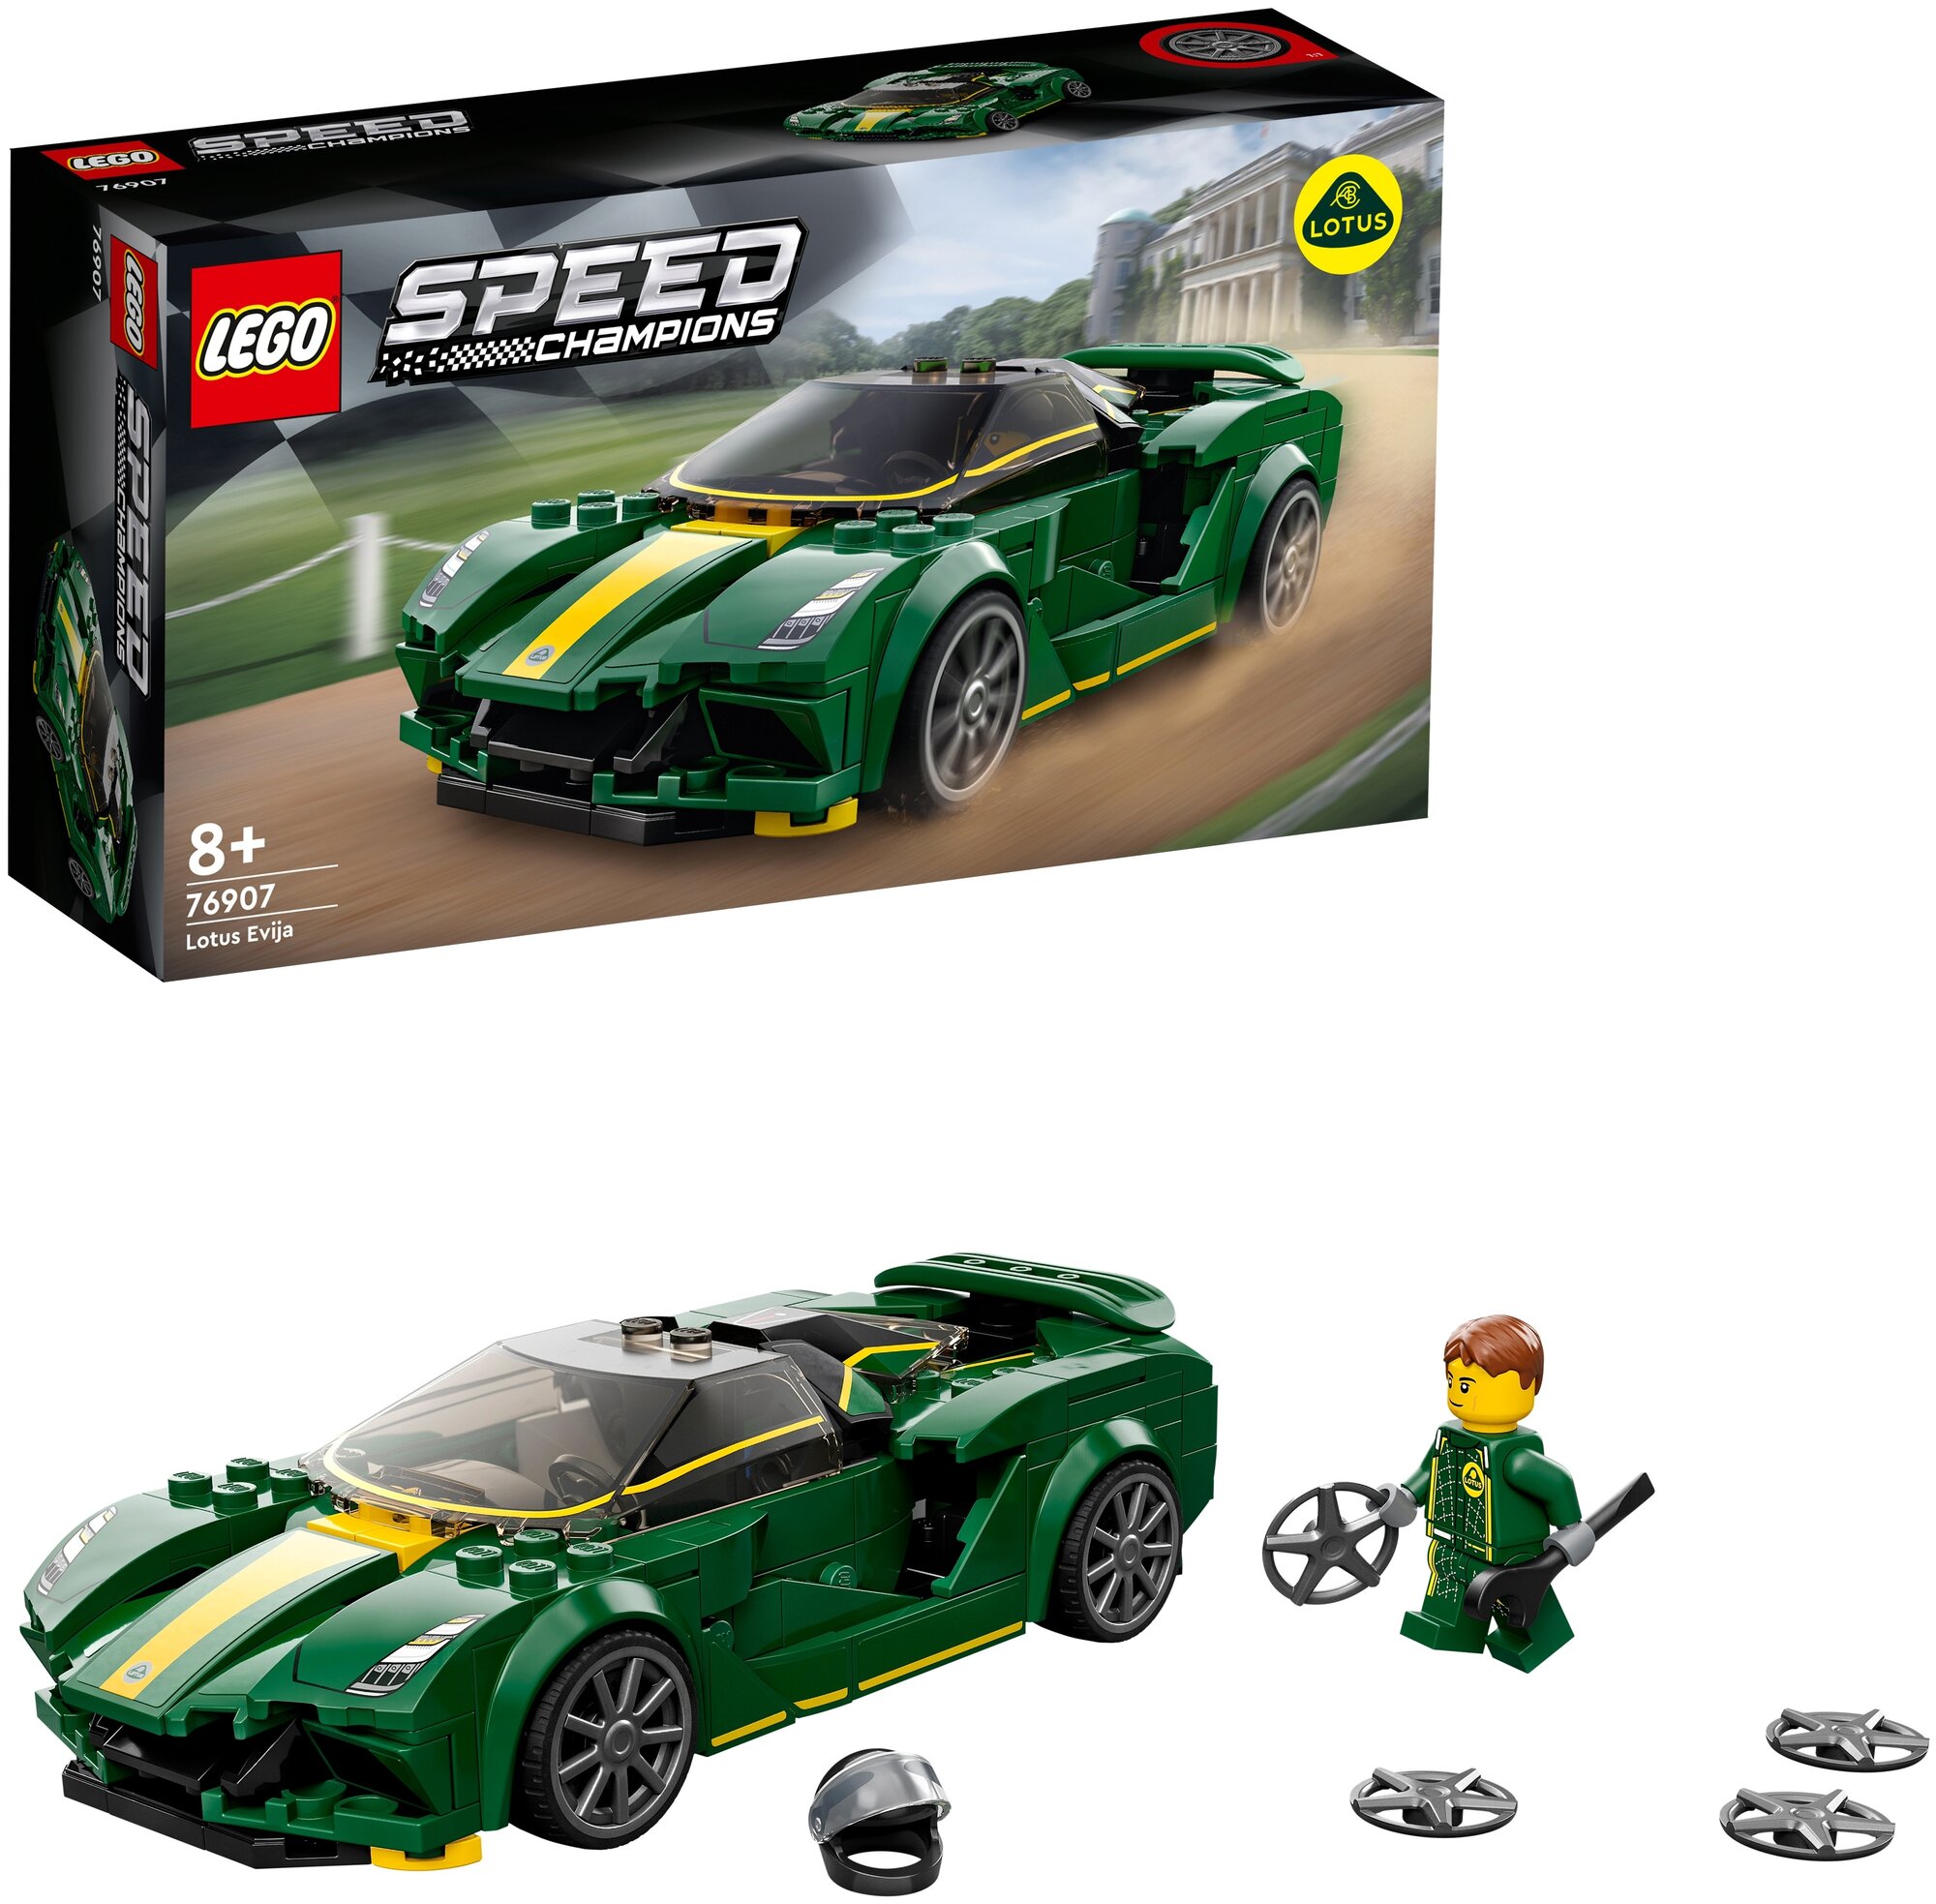 Конструктор LEGO Speed Champions 76907 "Lotus Evija" - фото №4